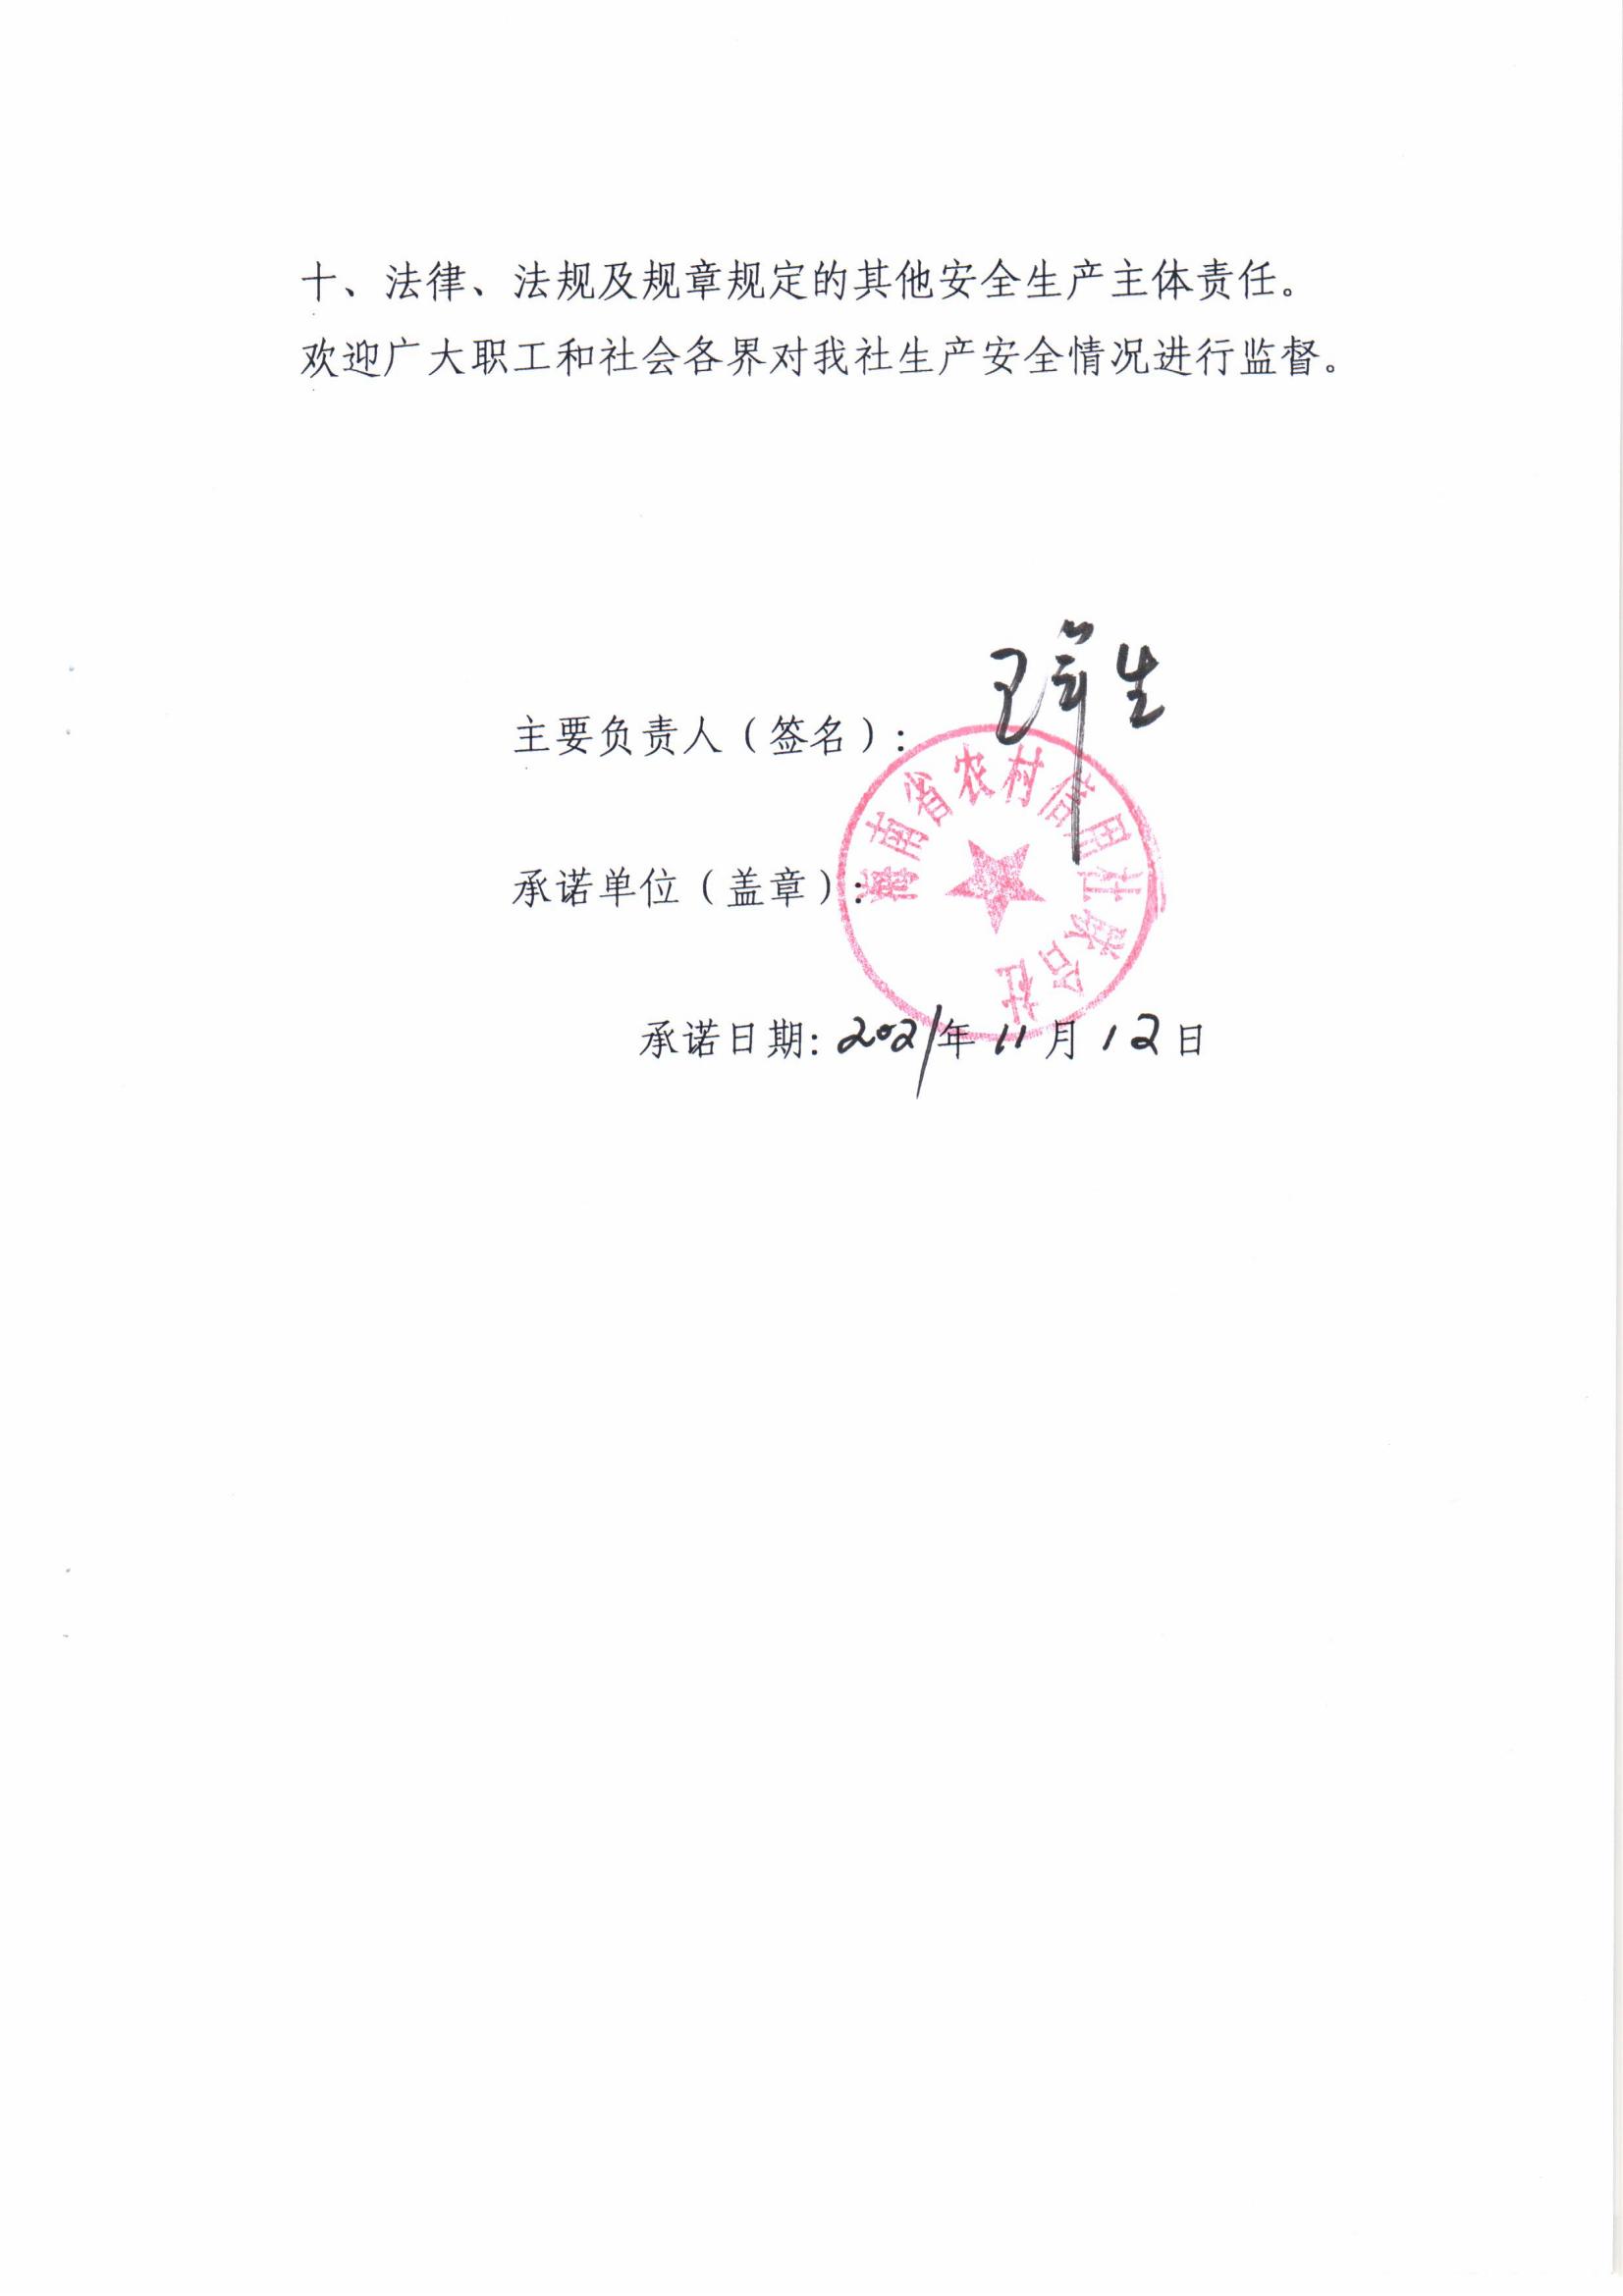 海南省农村信用社联合社安全生产承诺书